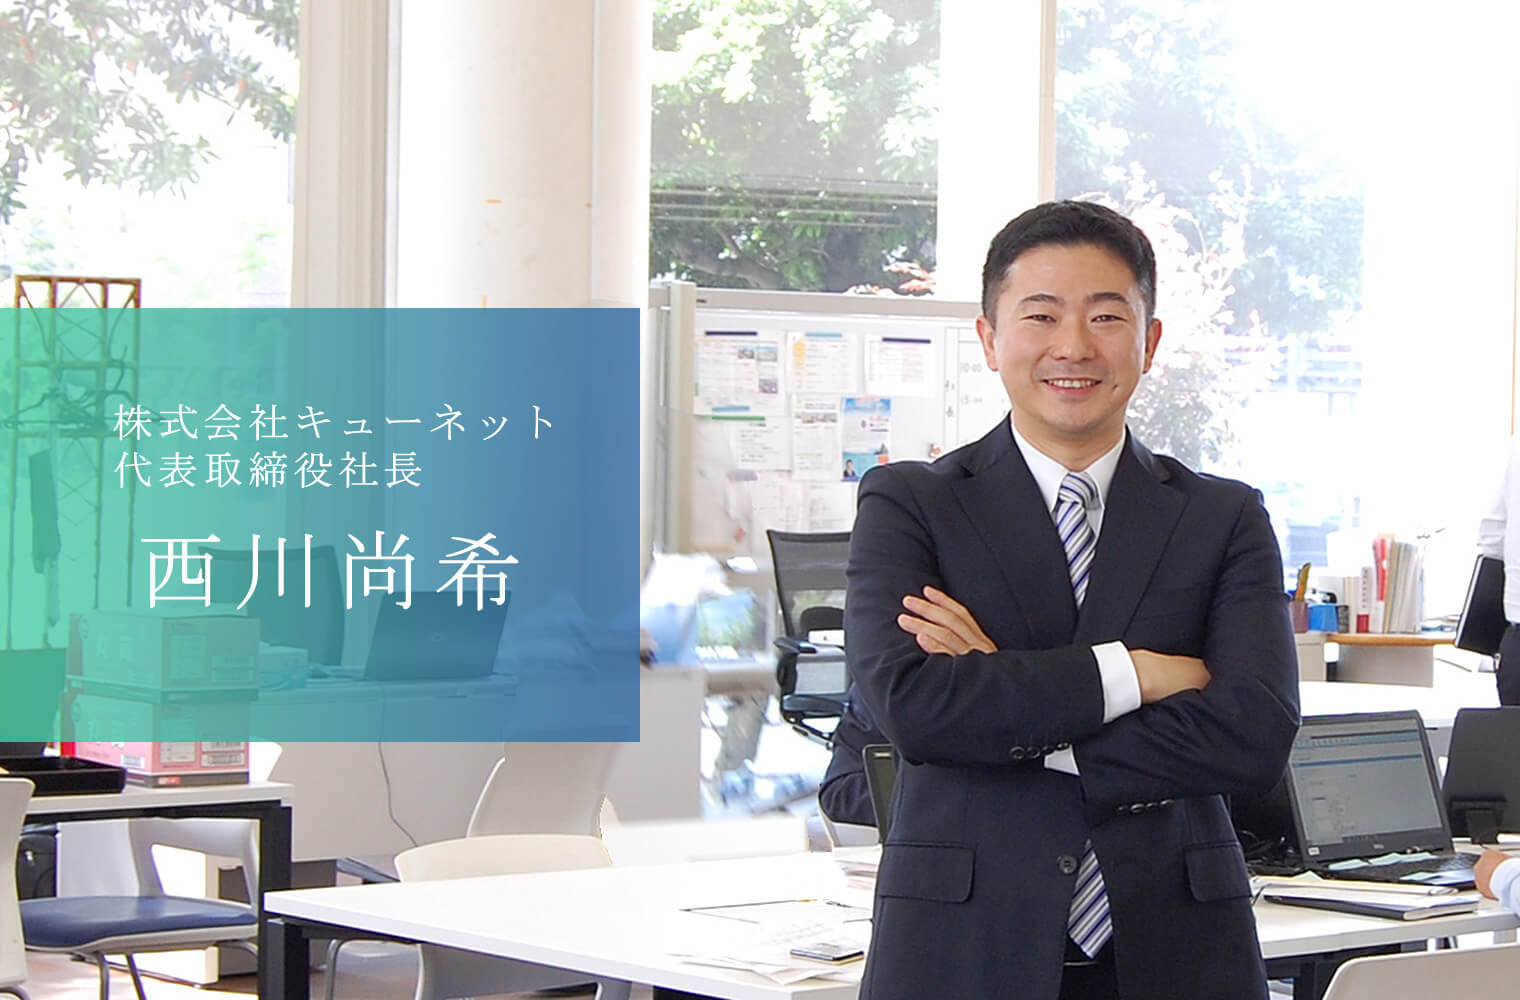 テクノロジーと熊本愛で熊本を日本一安全な街にする株式会社キューネットの西川社長